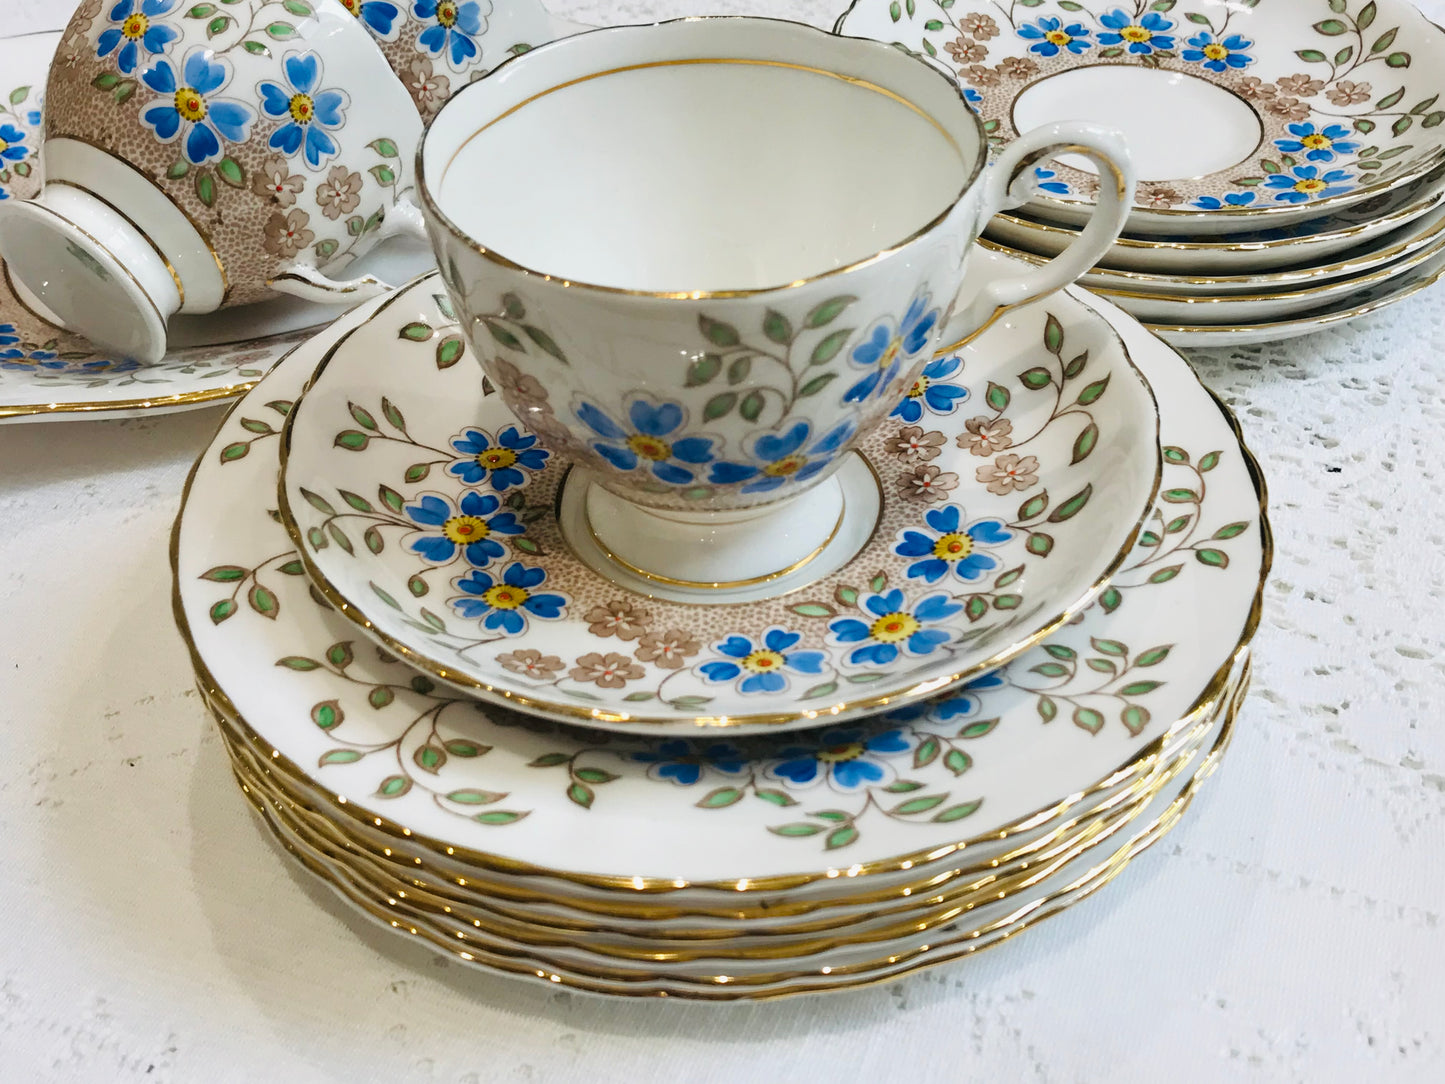 Hübsche blau-weiß geblümte toskanische Teetassen und Untertassen